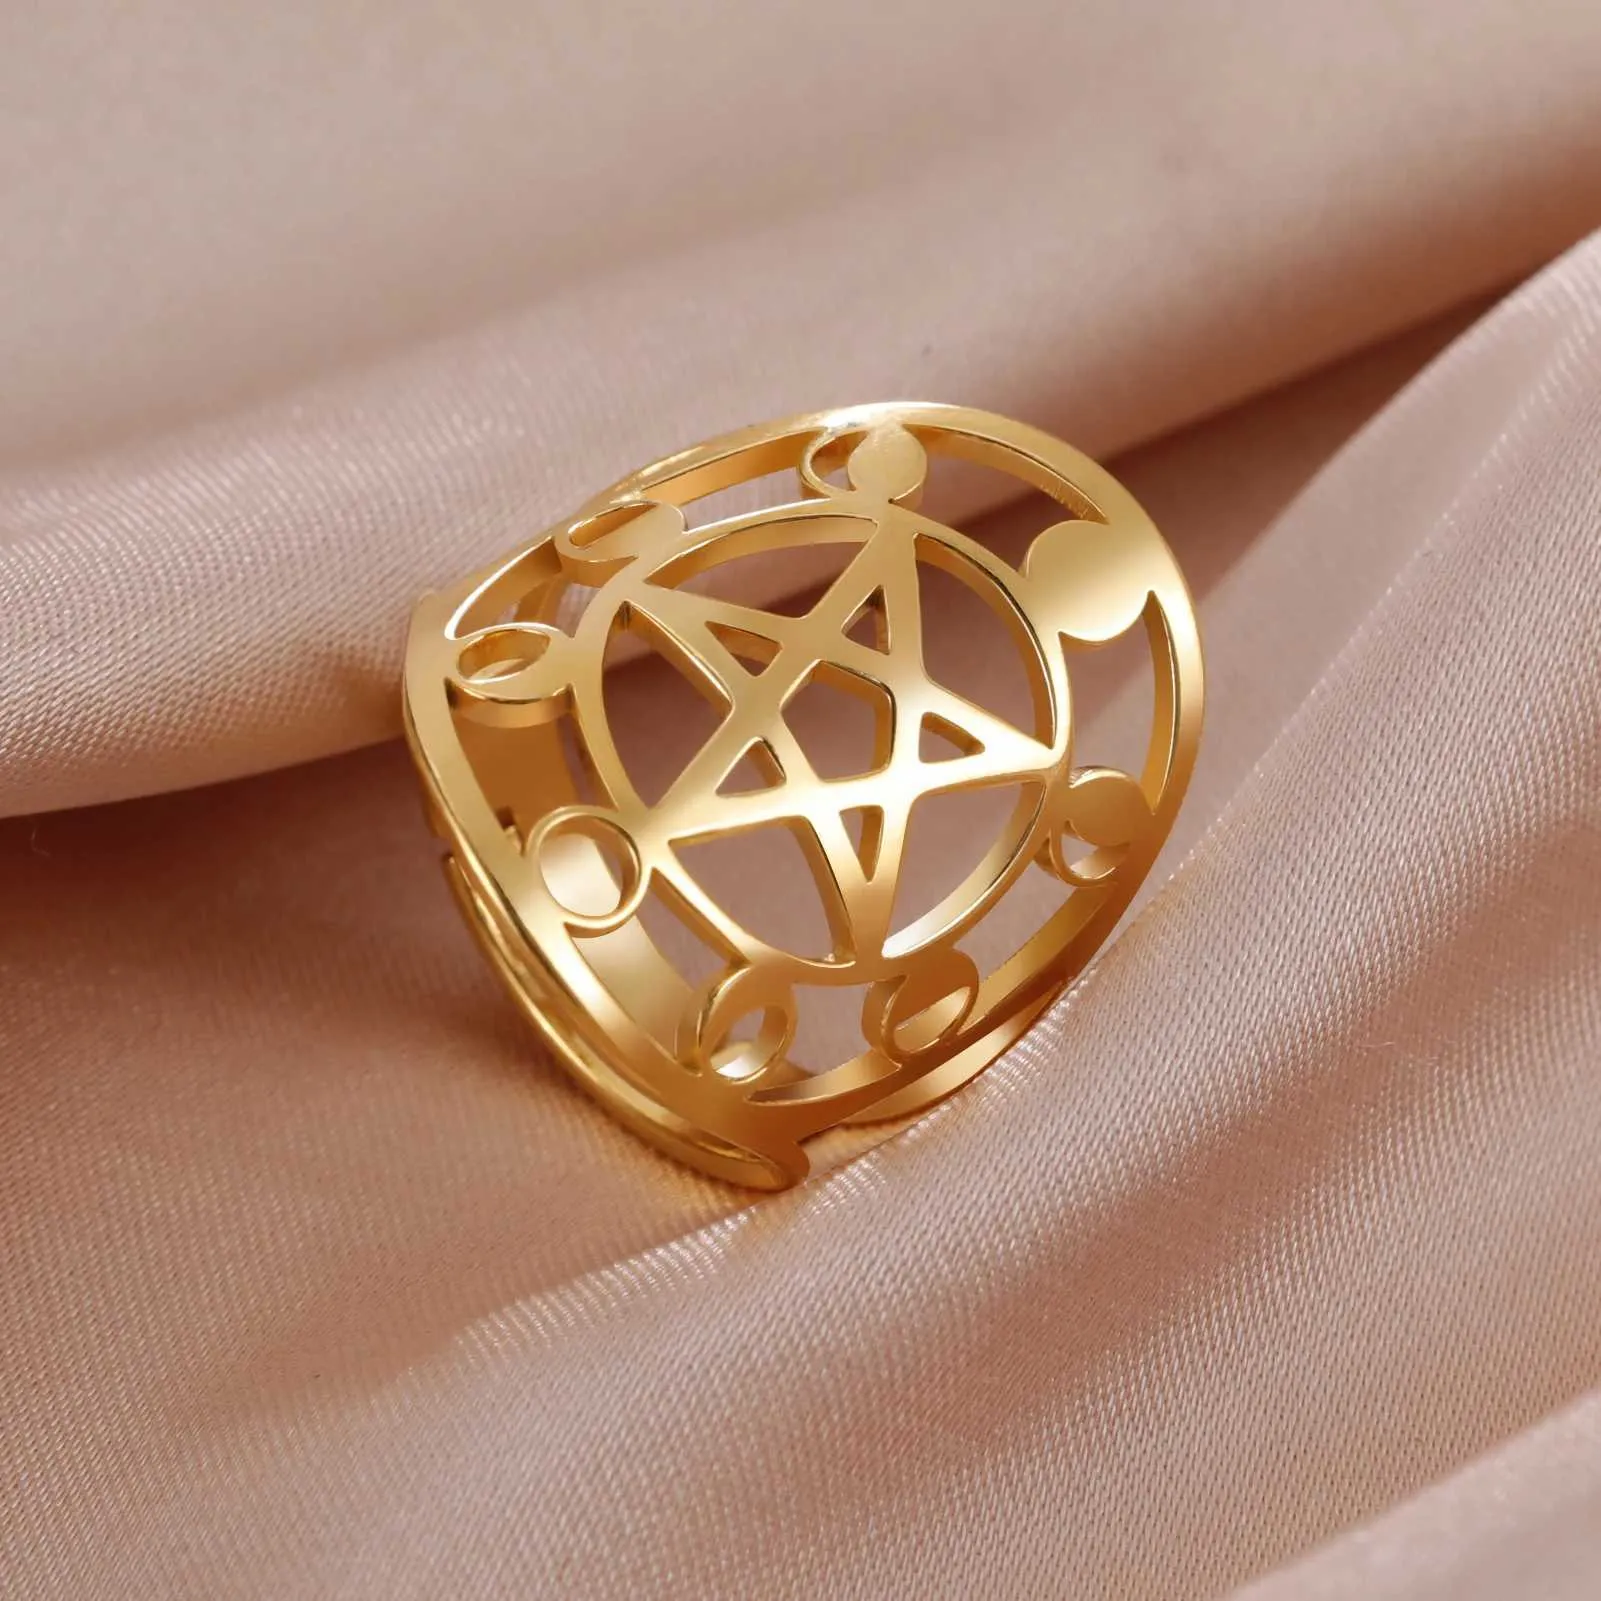 Eheringe Skyrim Moon Phase Pentacle Pentagramm Ring Edelstahl Verstellbarer Finger Ringe Wicca Amulett Schmuck Geschenk für Mutterliebhaber